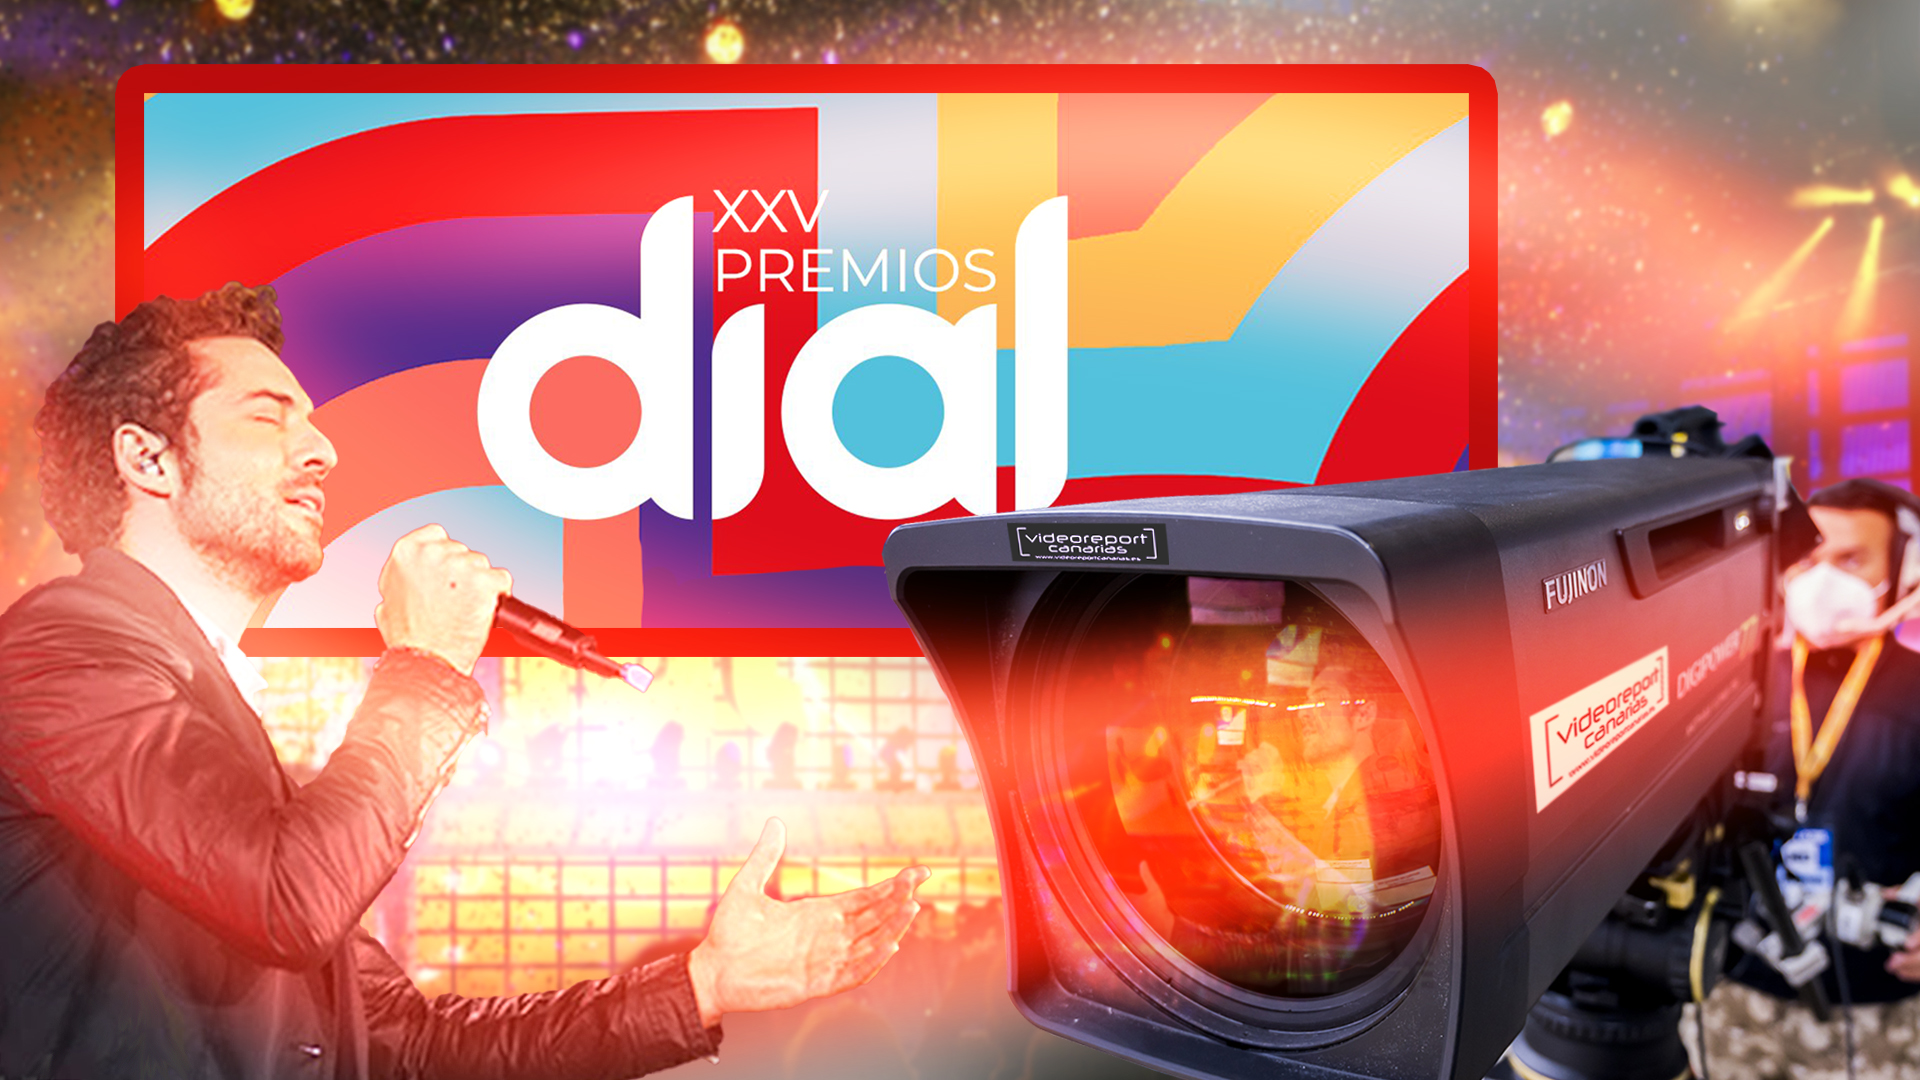 Videoreport Canarias producirá para televisión la XXV edición de los Premios Cadena Dial